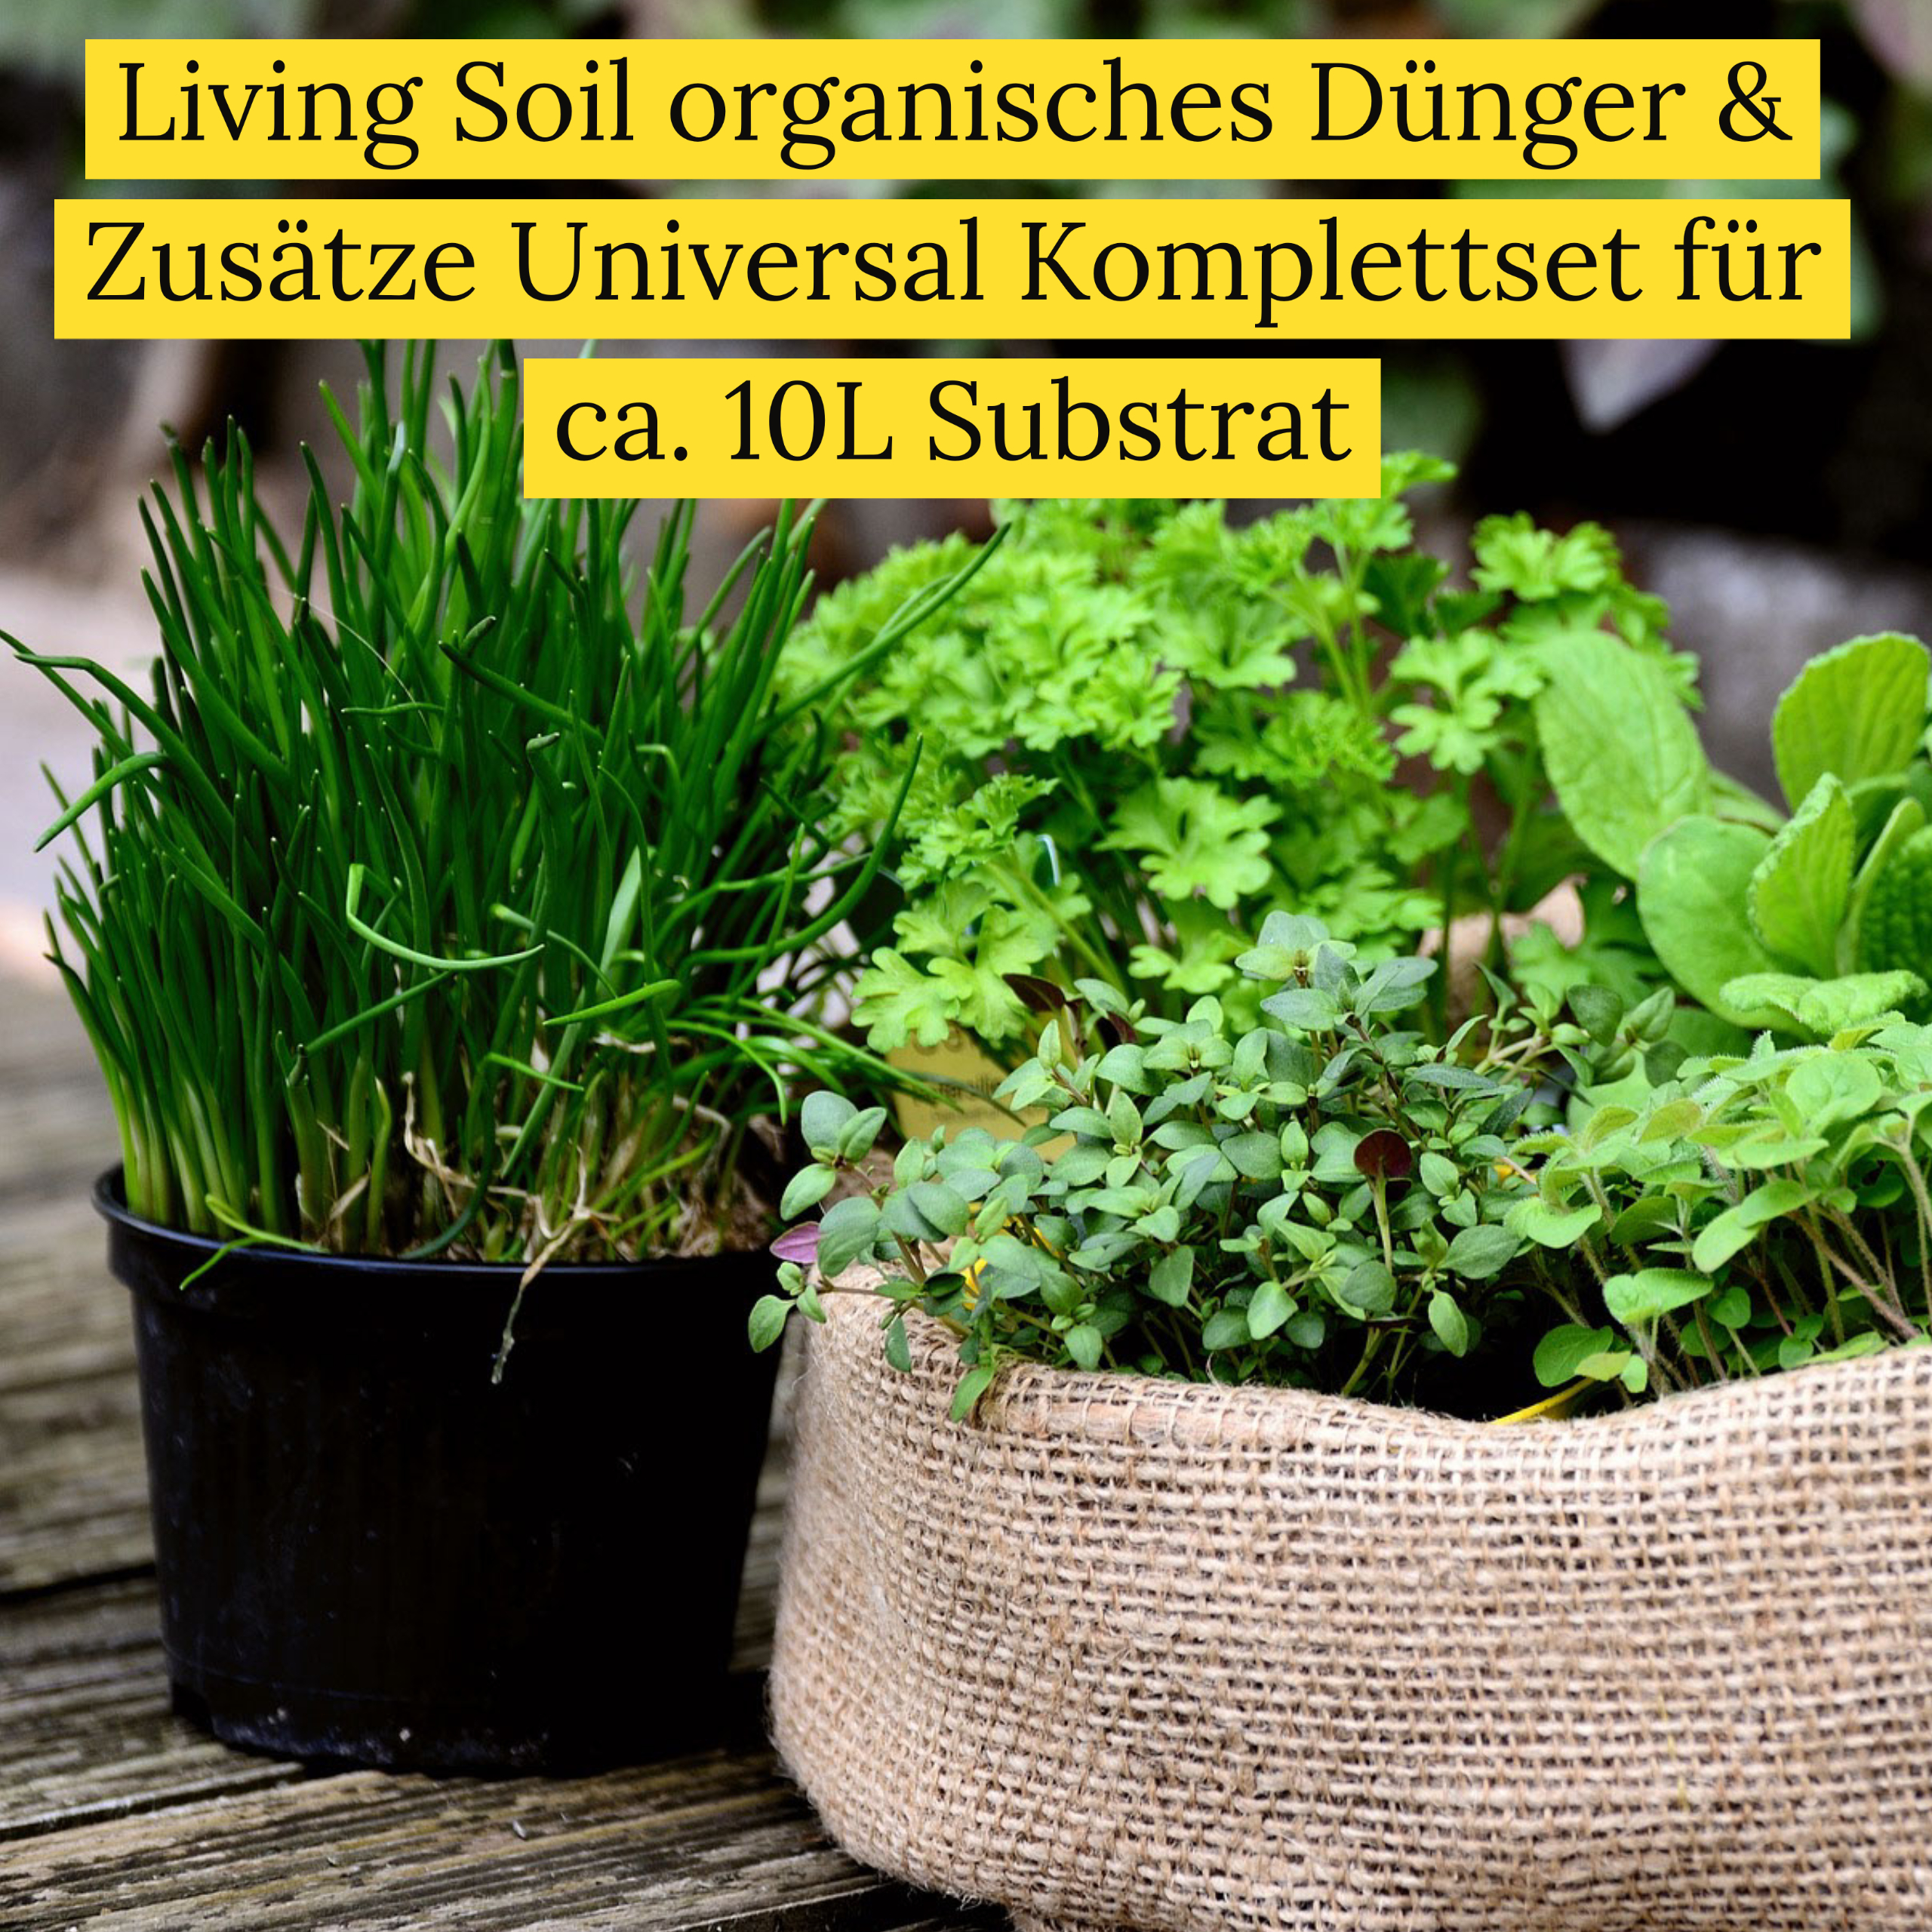 Living Soil organisches Dünger & Zusätze Universal Komplettset für ca. 10L Substrat Produktbild